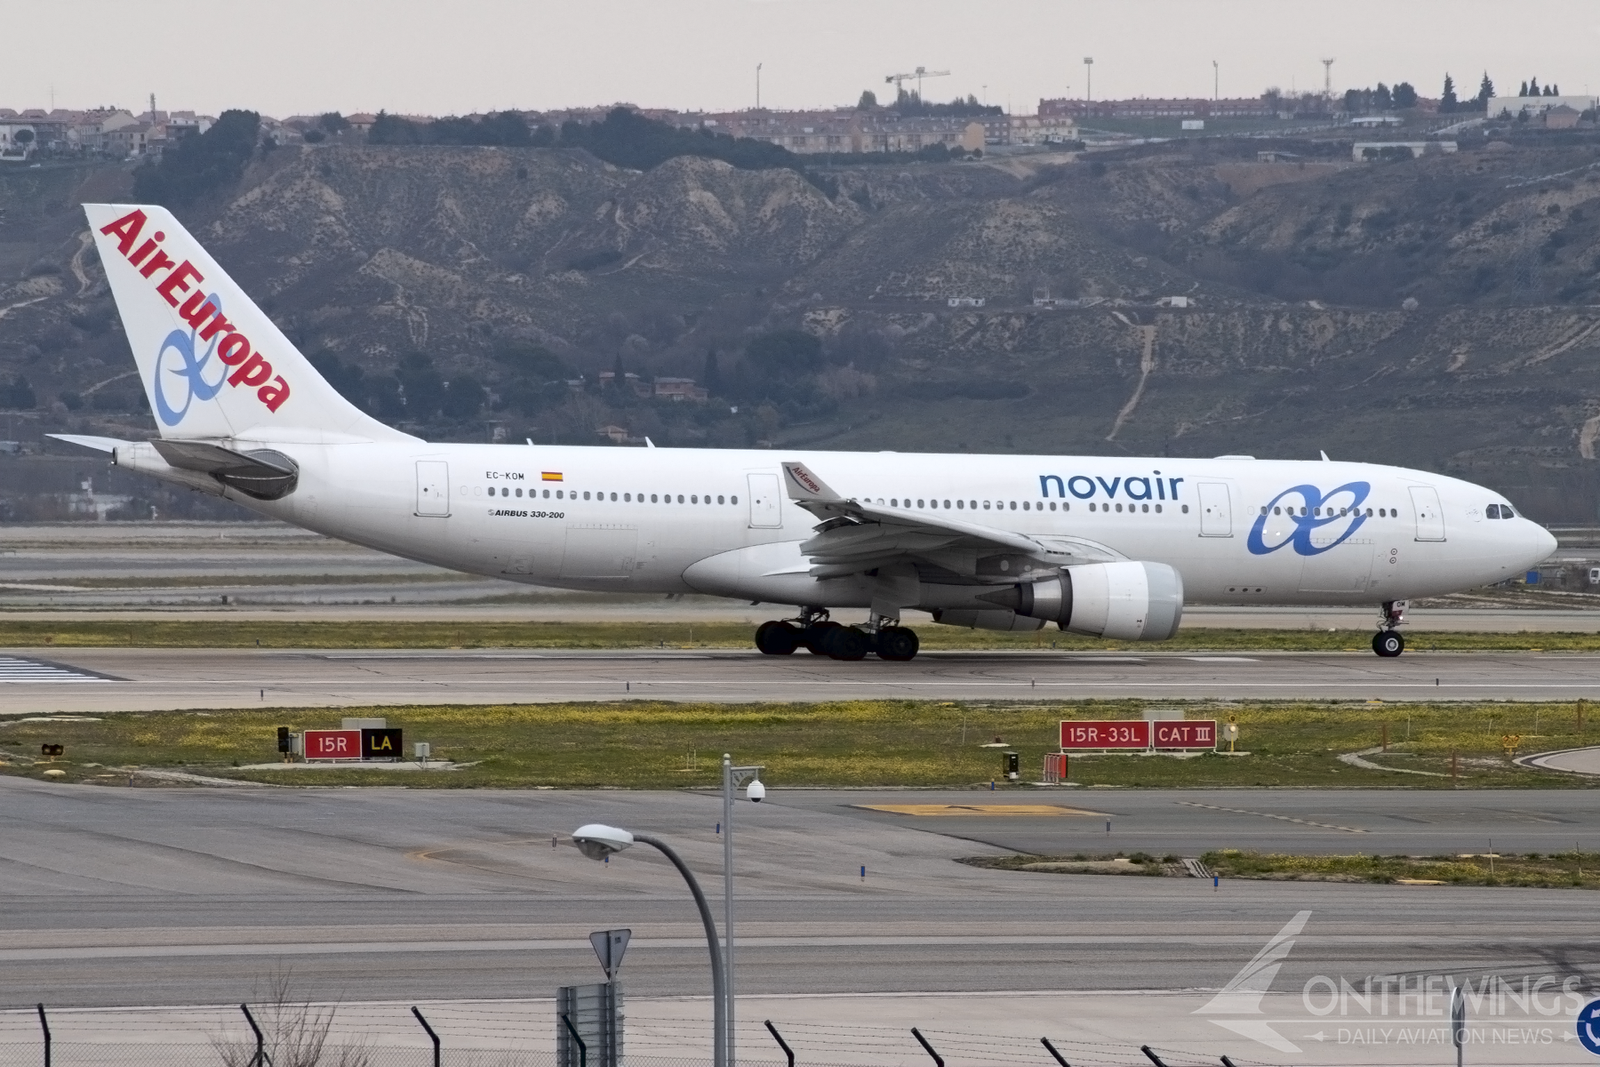 Novair llegó a alquilar dos A330-200 a Air Europa, que llevaron títulos parciales de la aerolínea sueca.